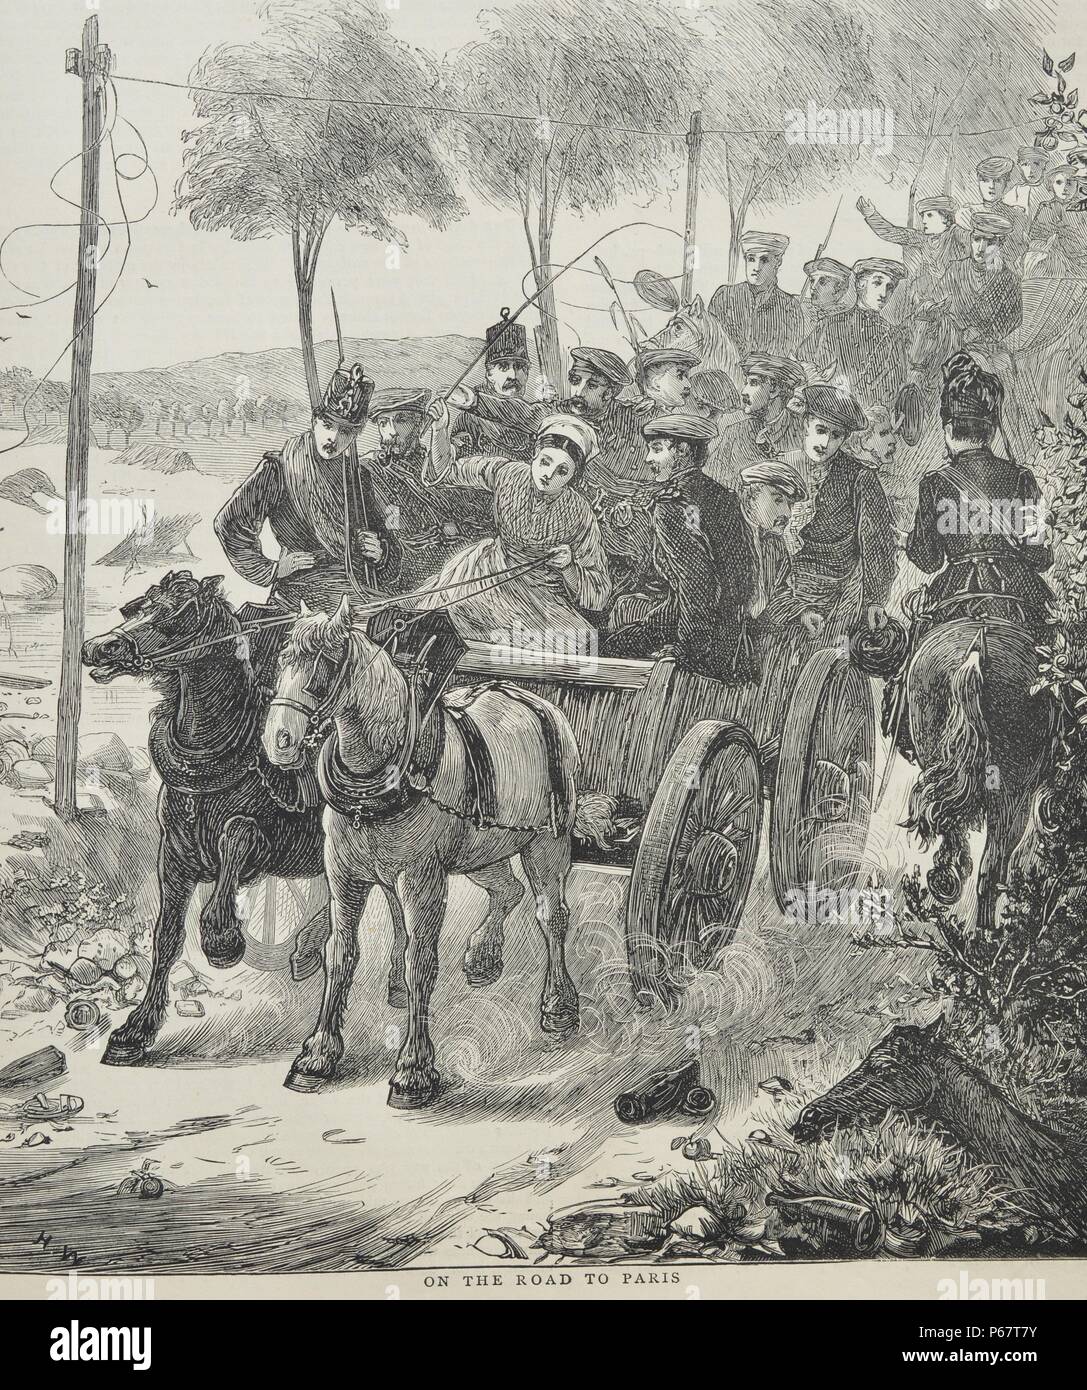 Incisione raffigurante i passeggeri sulla strada di Parigi. Datata 1870 Foto Stock